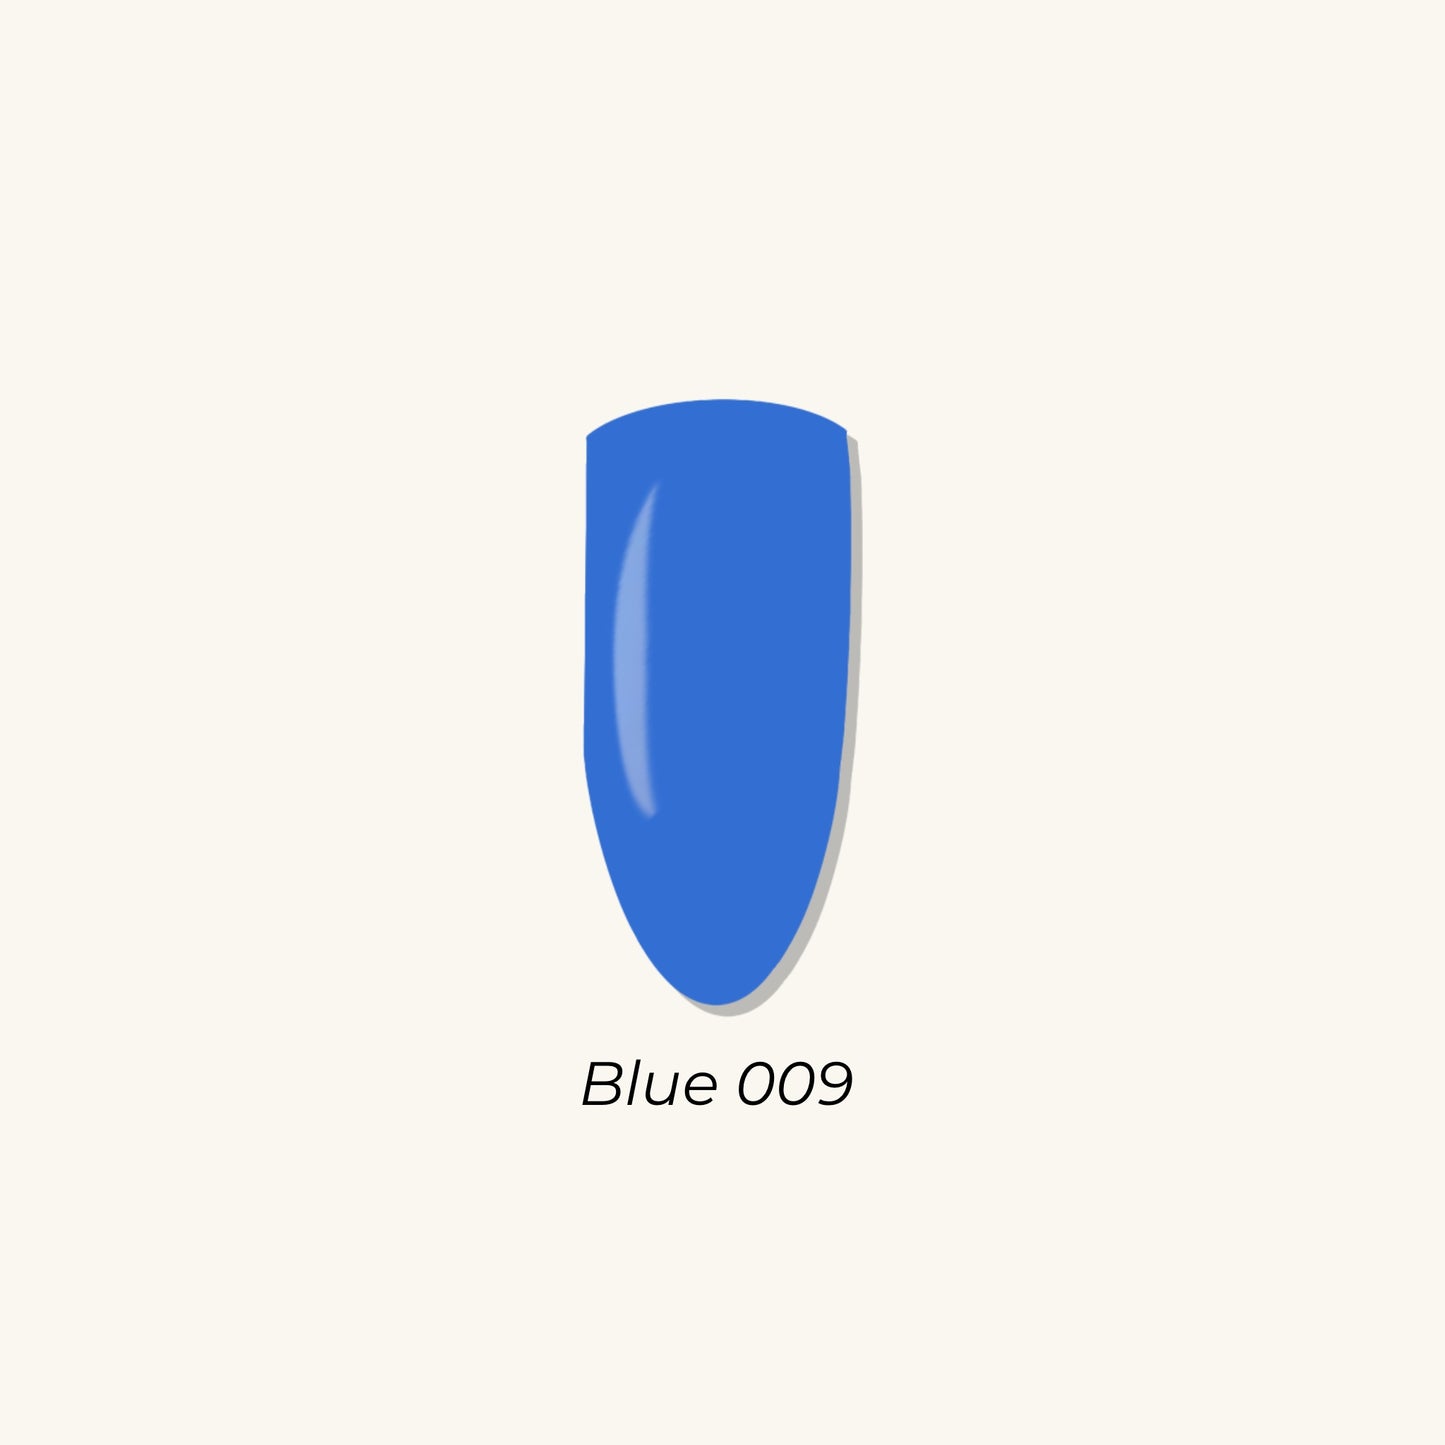 Blue 009